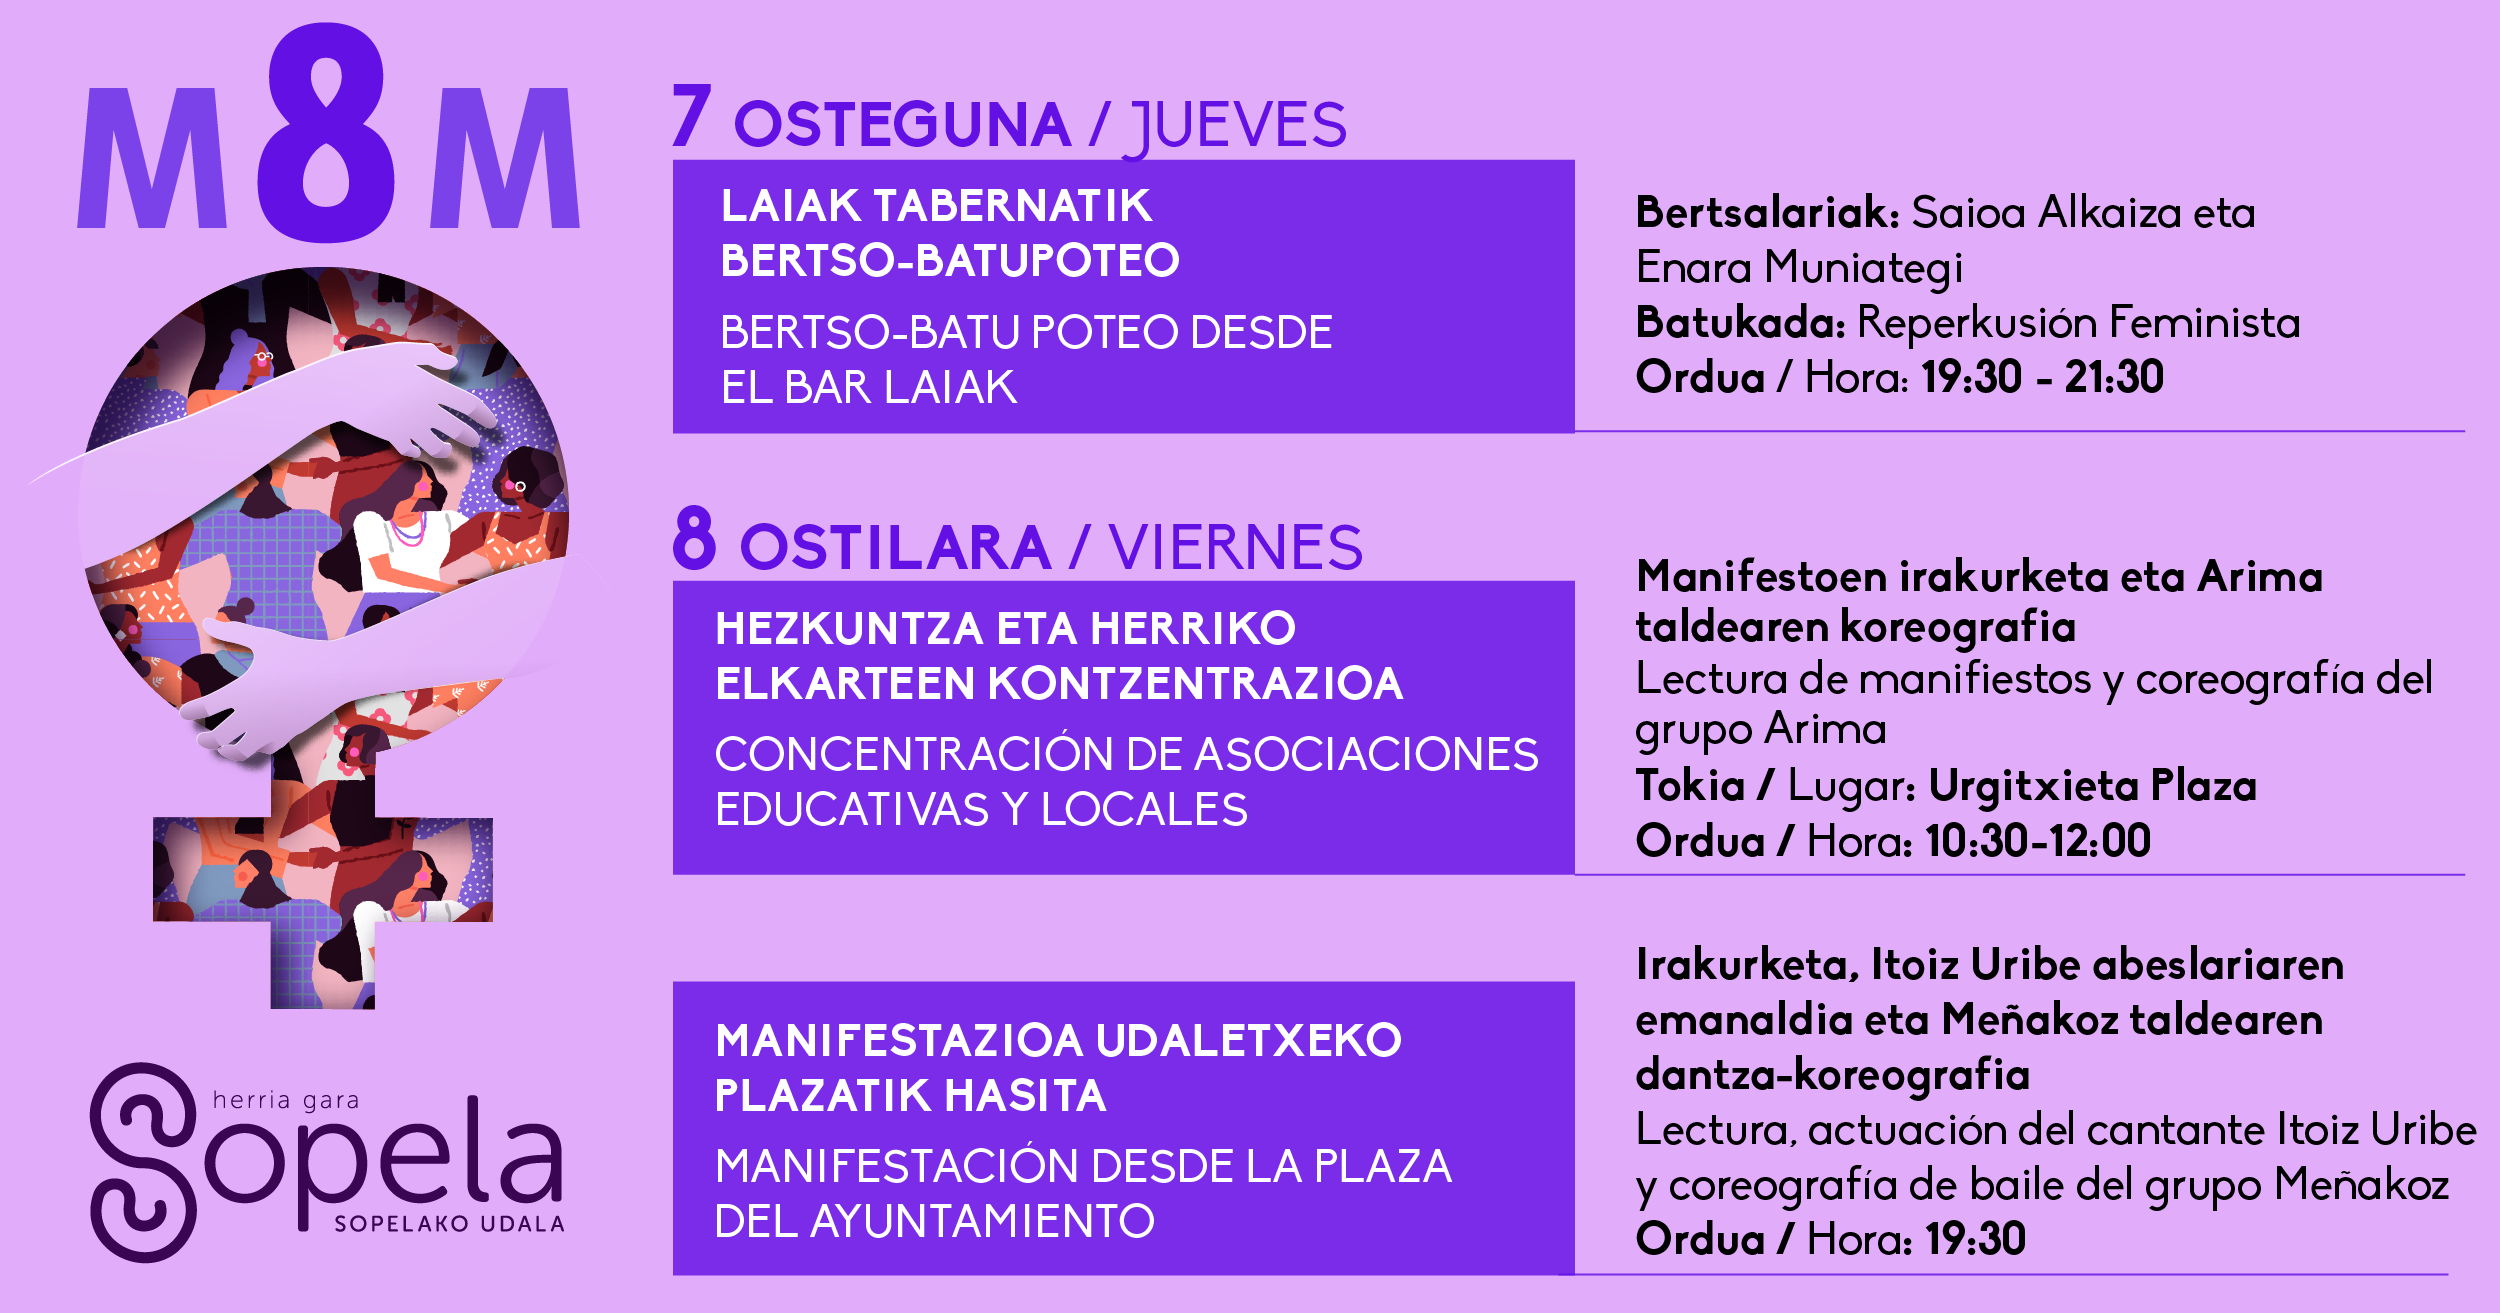 El Ayuntamiento de Sopela celebra el Día Internacional de la Mujer con una serie de actividades inclusivas